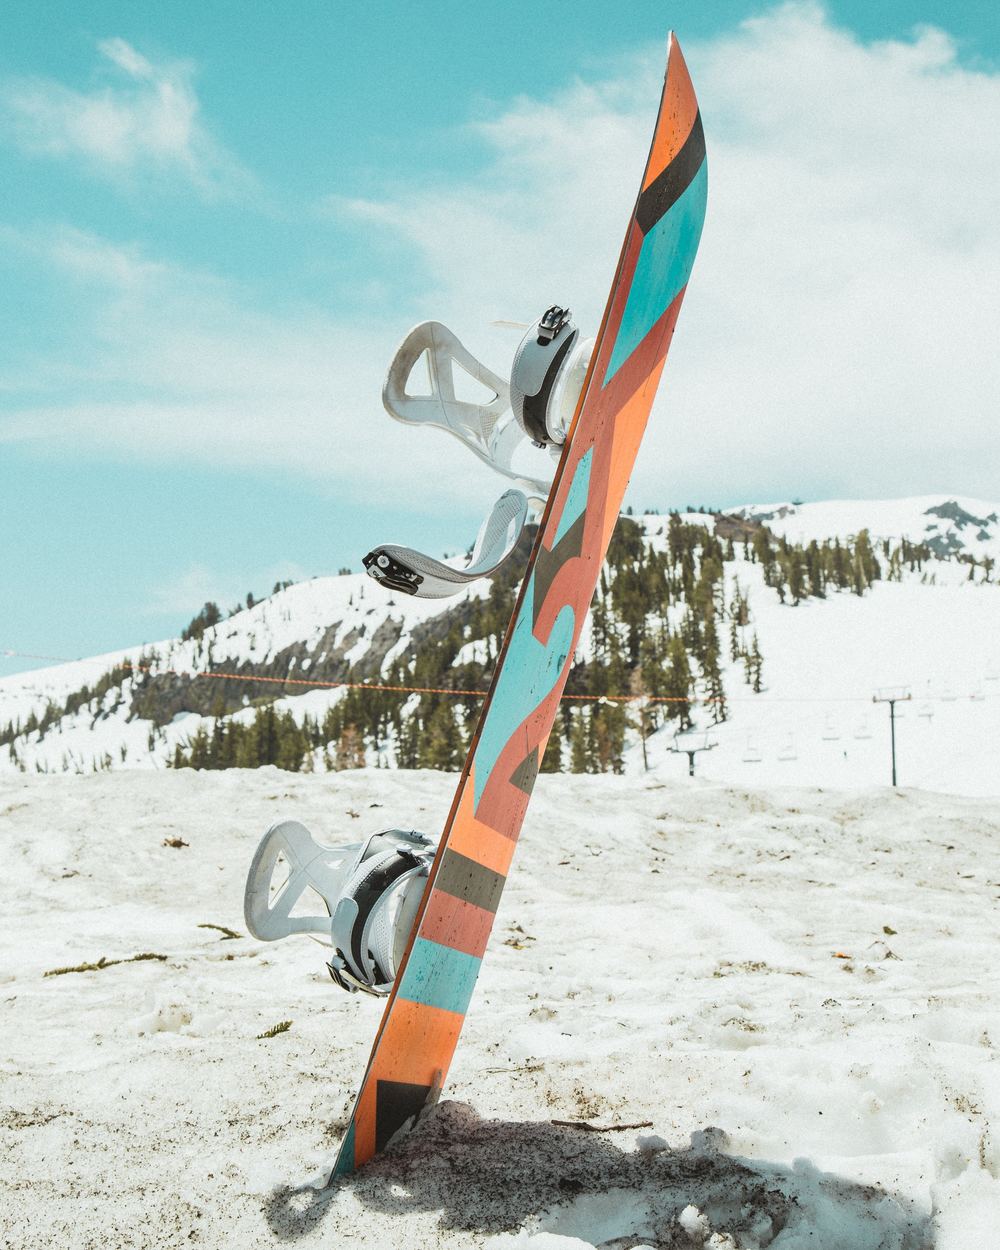 is skiing or snowboarding easier